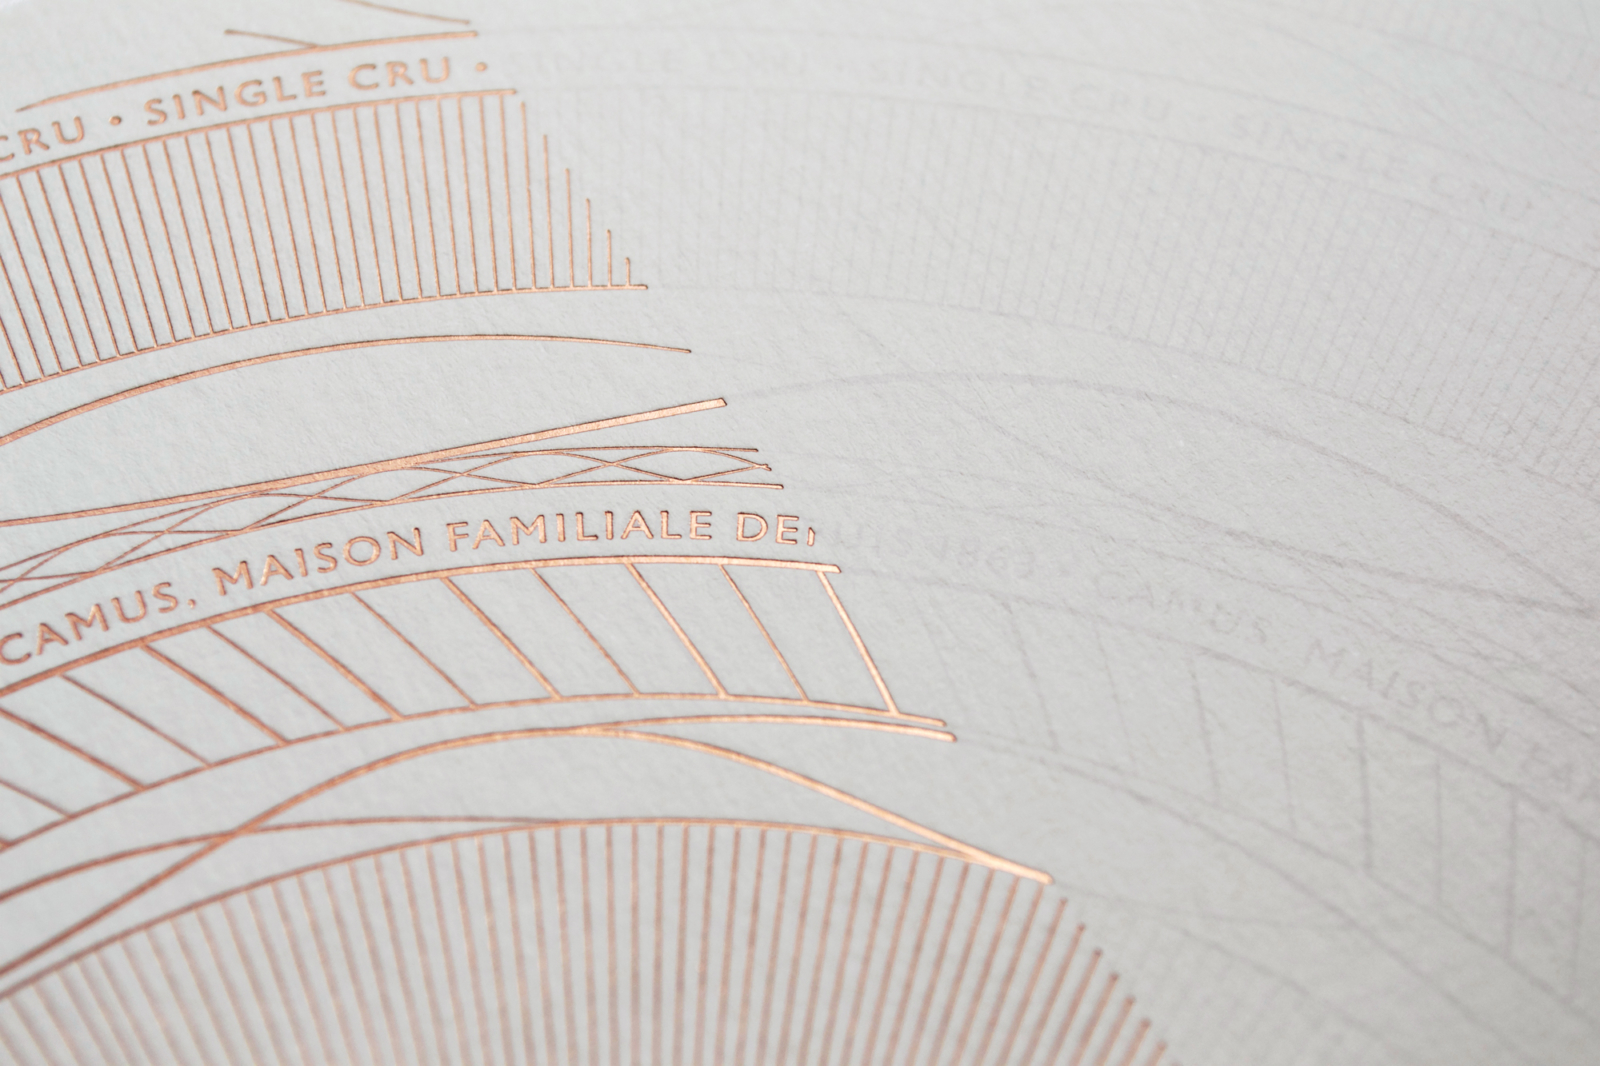 Camus Borderies - Un design pensé par l’agence de design de Paris Partisan du Sens.